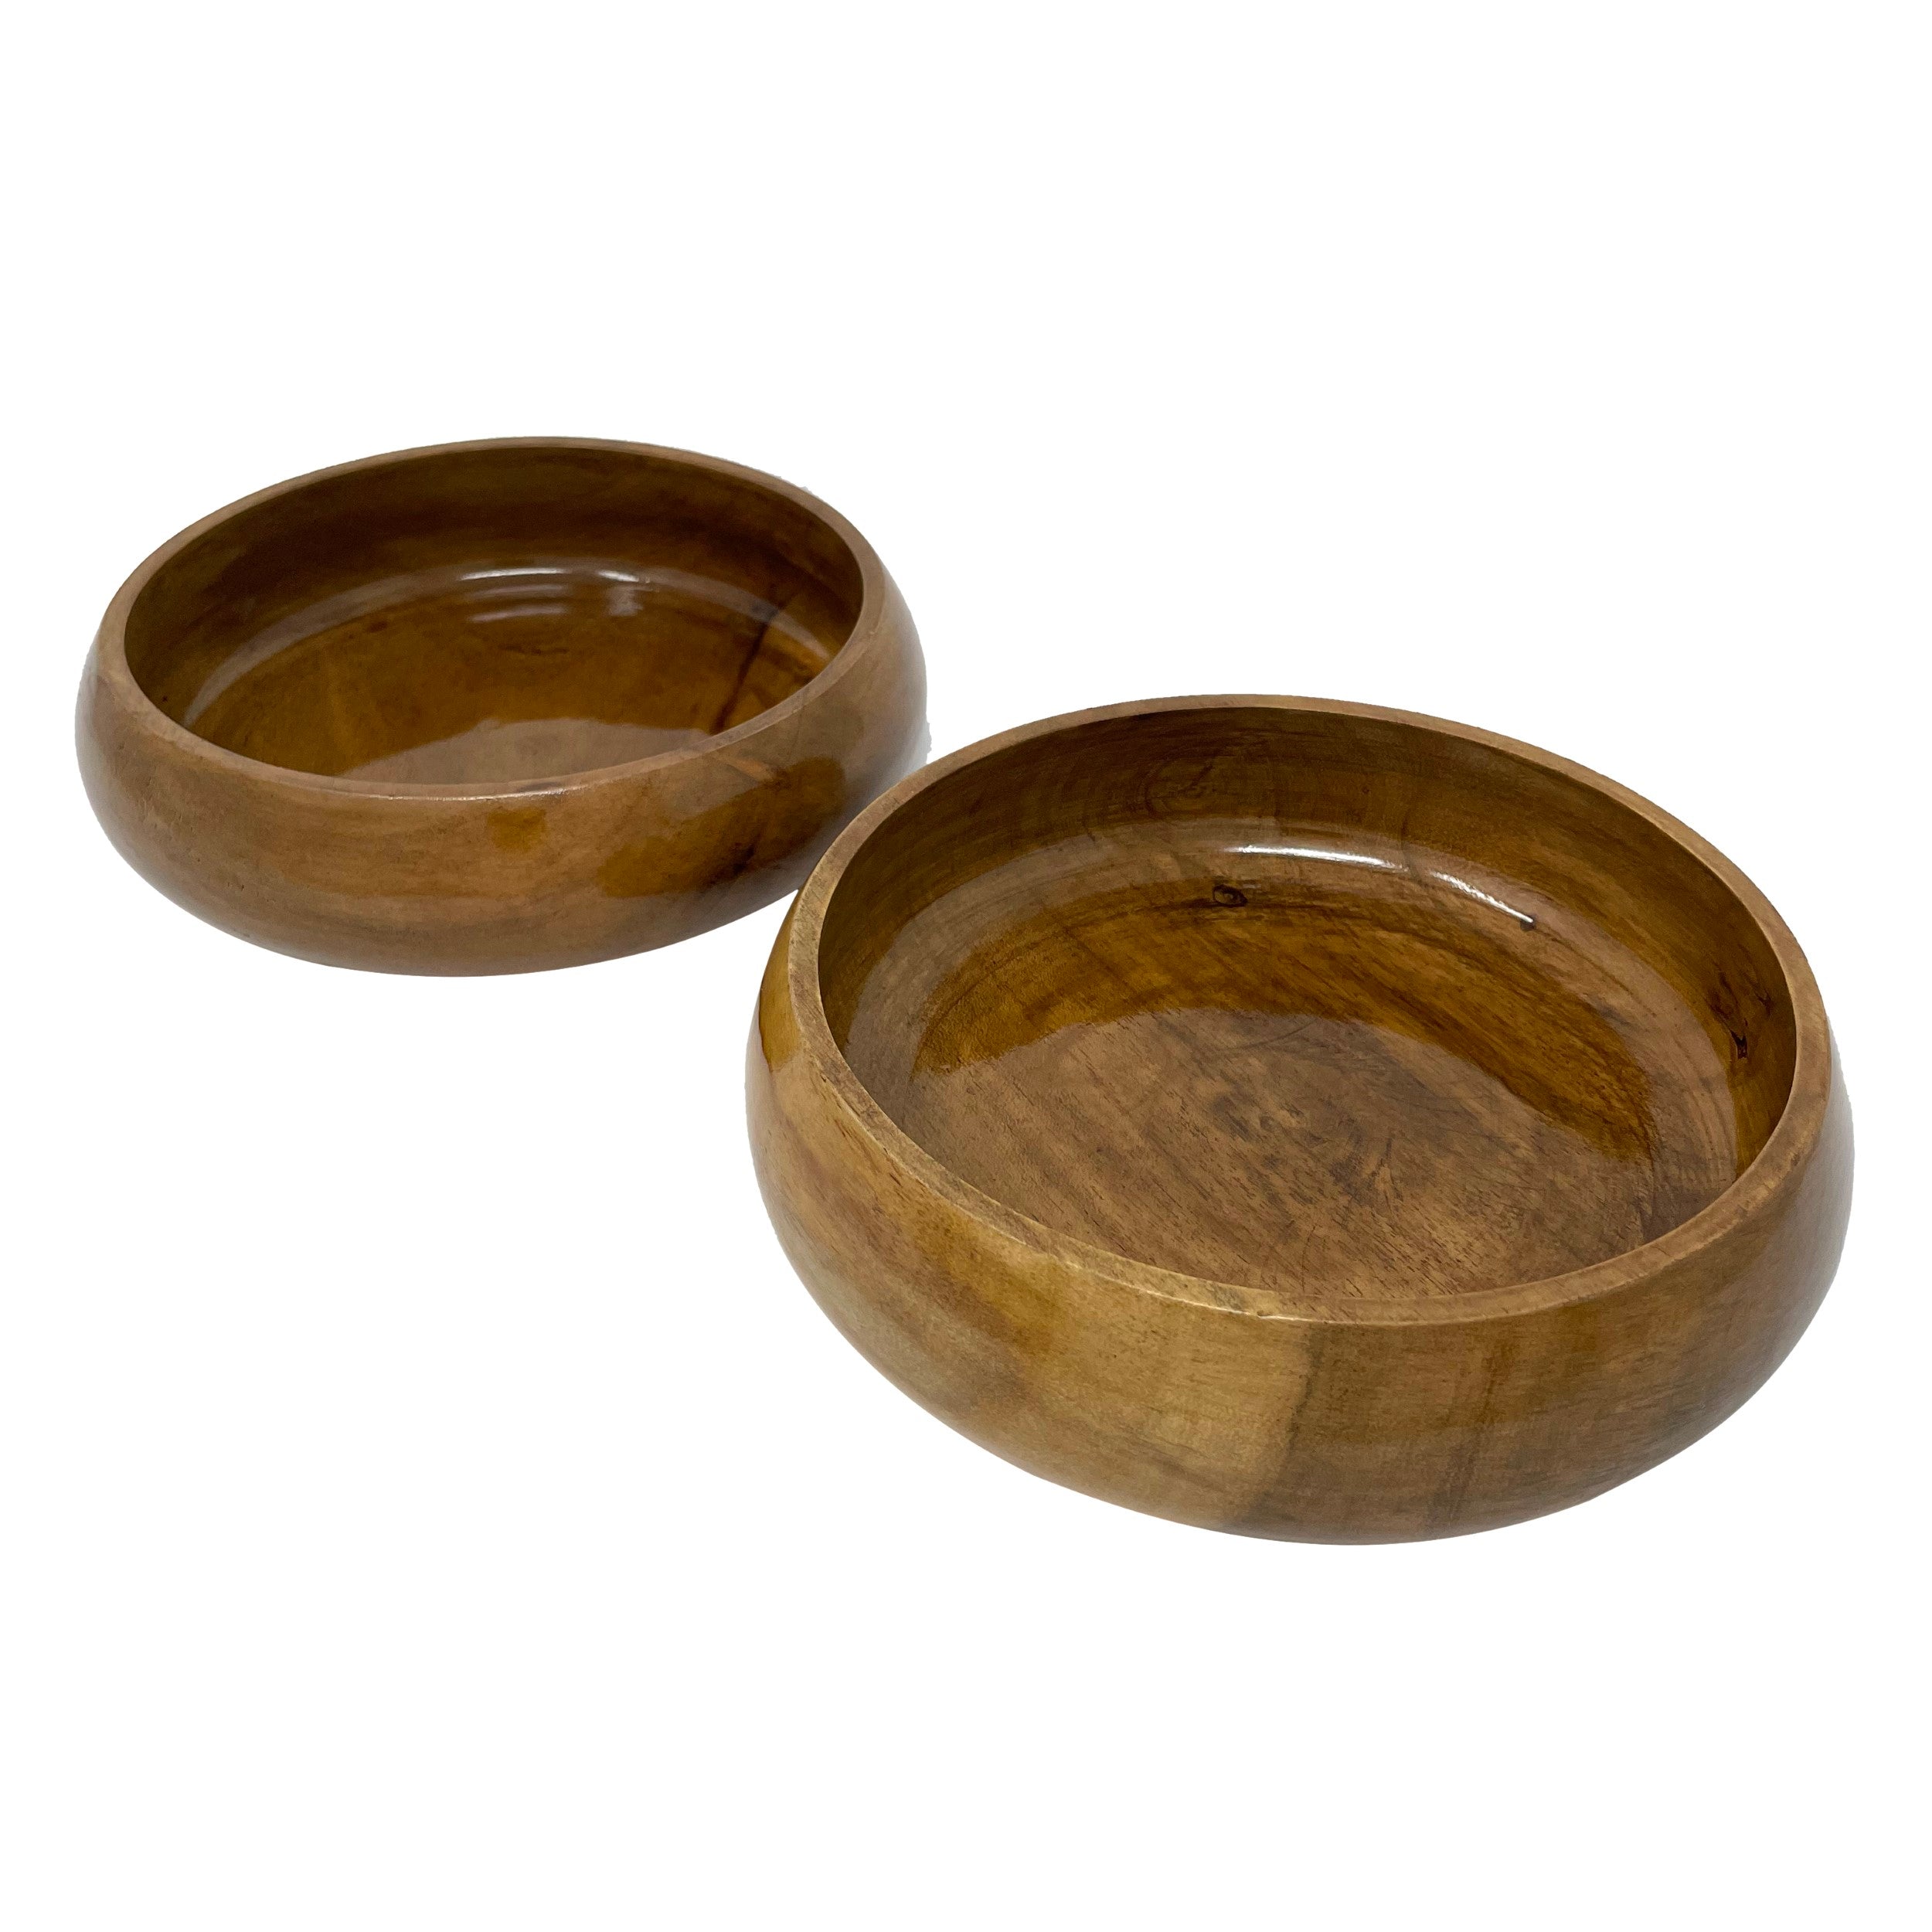 Large Serving Bowls (Set of 2), Glossy, Acacia Wood